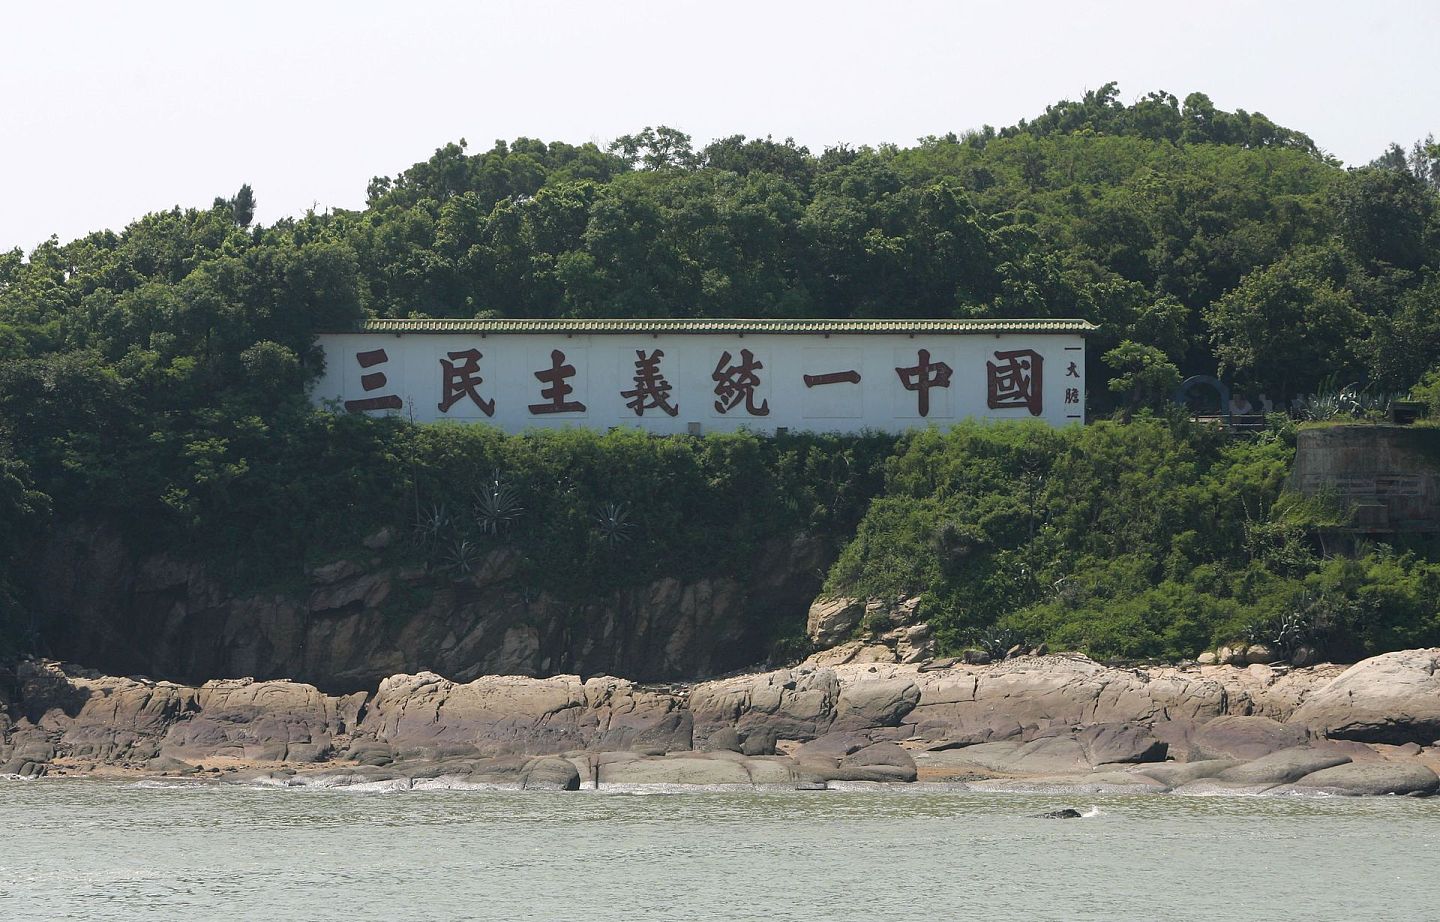 台湾金门“三民主义统一中国”心战墙，与大陆厦门“一国两制统一中国”心战墙隔海相望。（Getty）